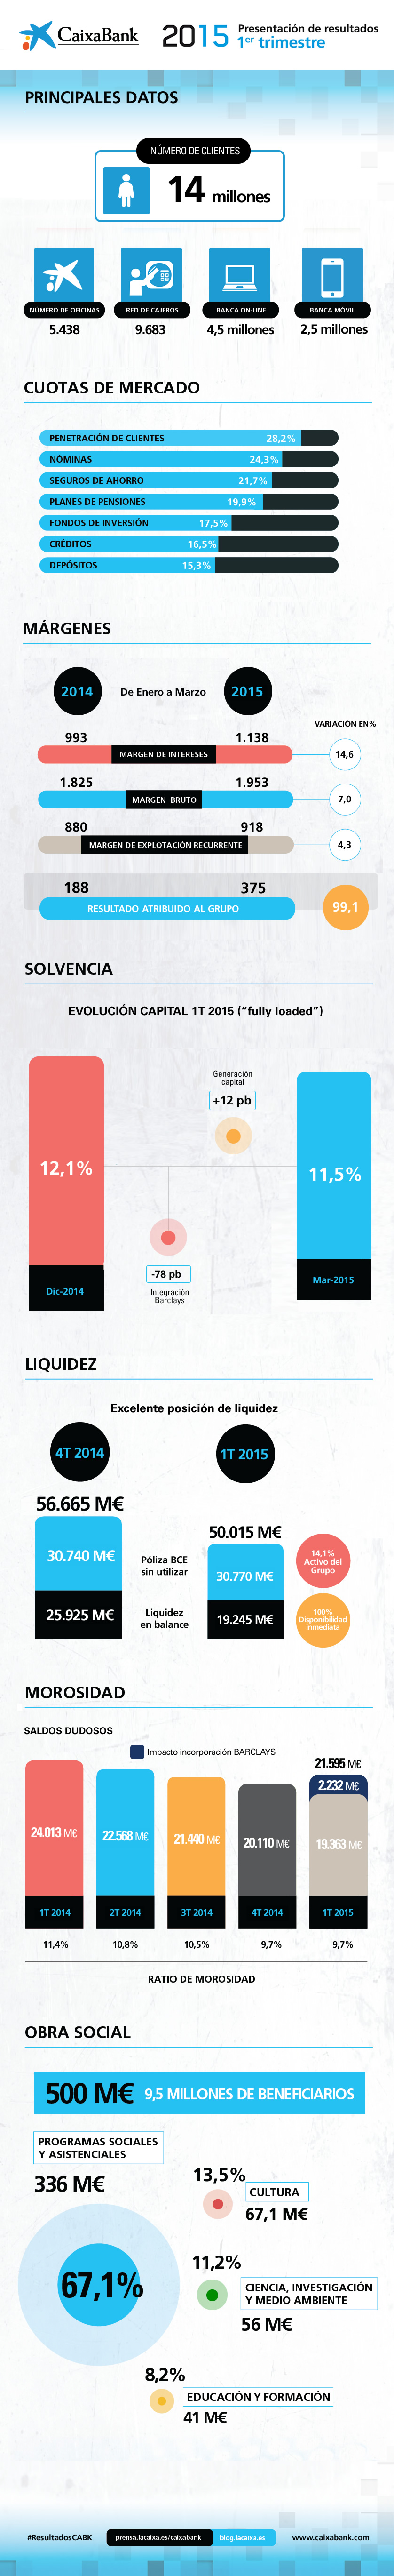 Resultados de CaixaBank 1T2015 - infografía